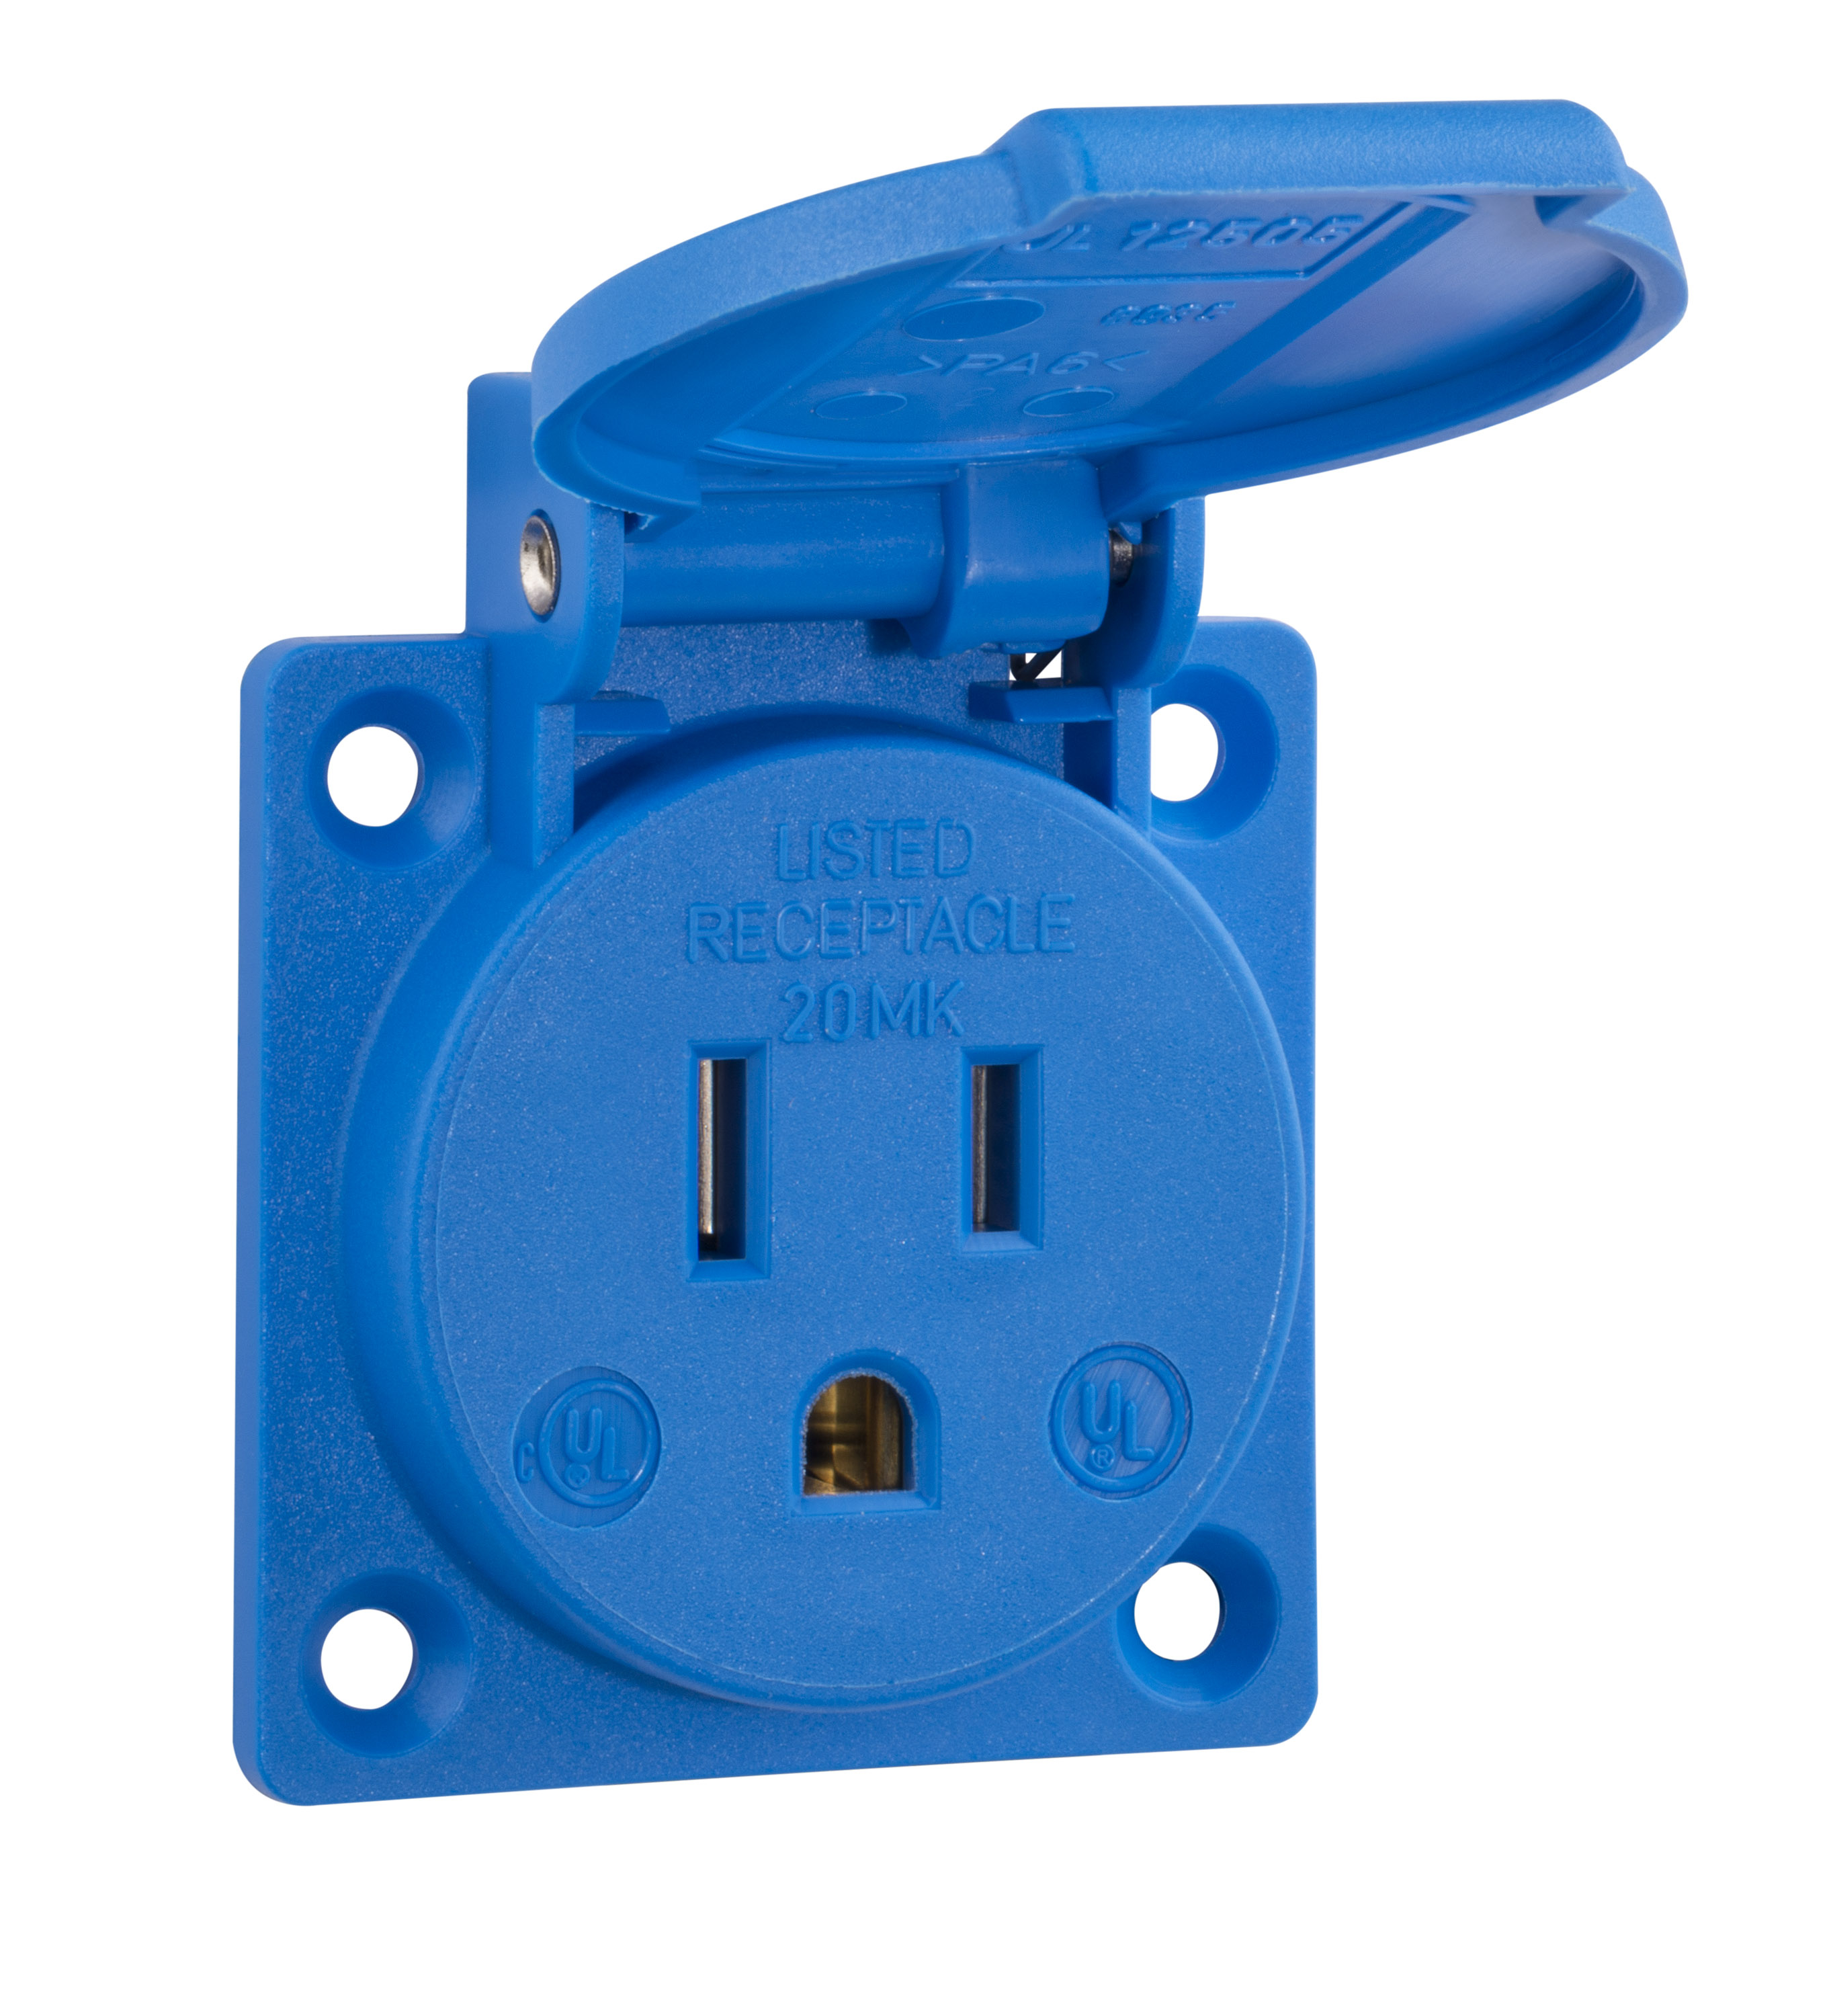 Built-in socket outlet, USA / Canada standards, blue, 125 V/15 A